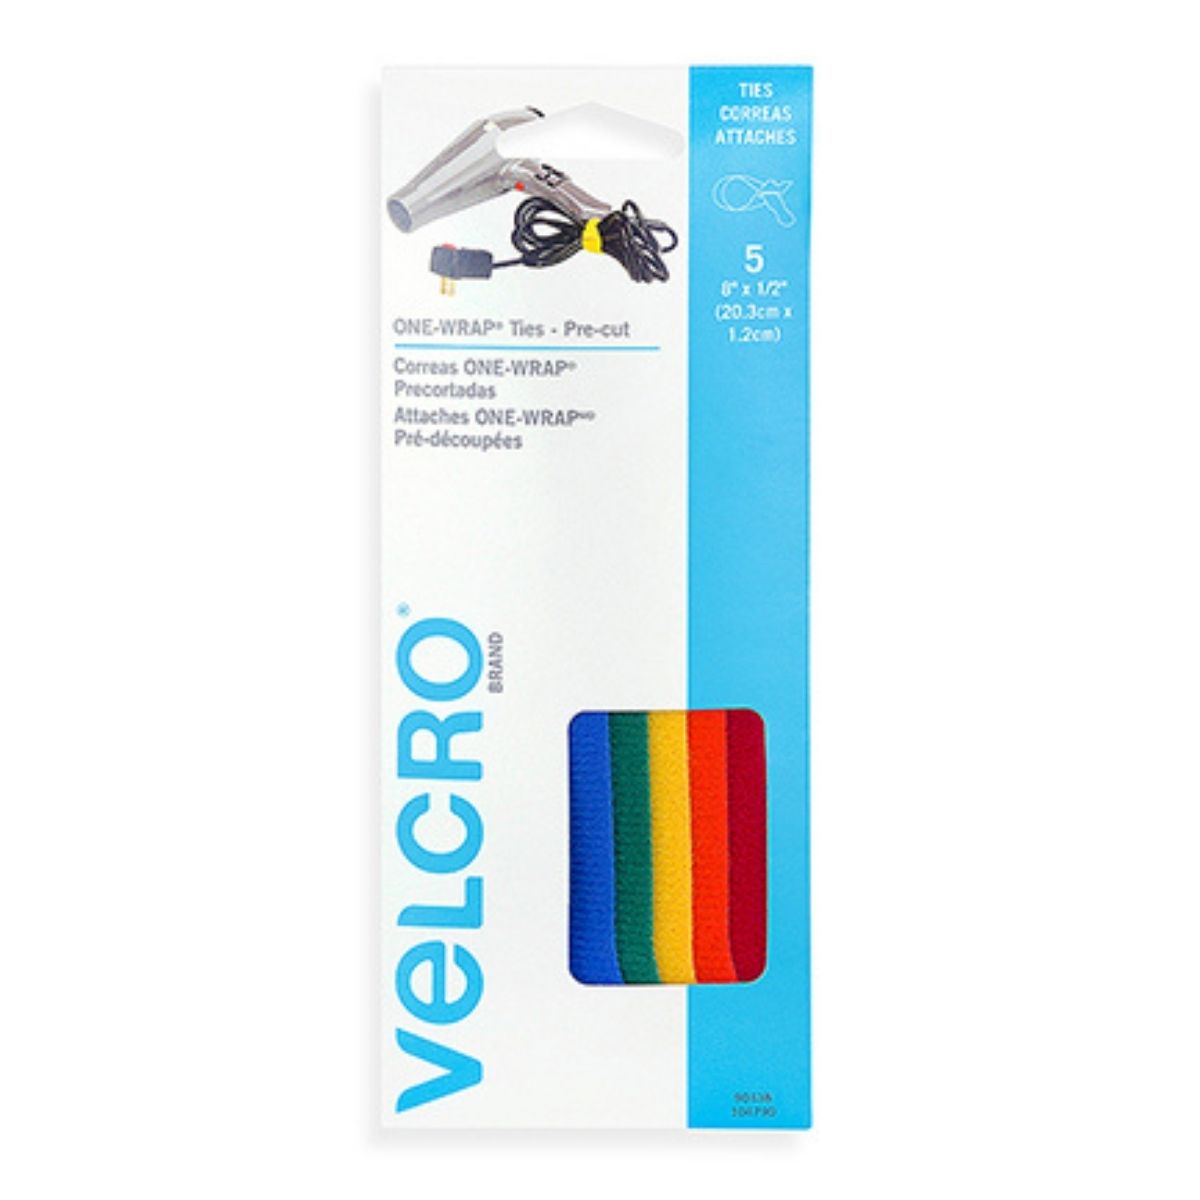 5 Correas Sujeción VELCRO® Tiras Multicolor Organizador de Cables - MarchanteMX